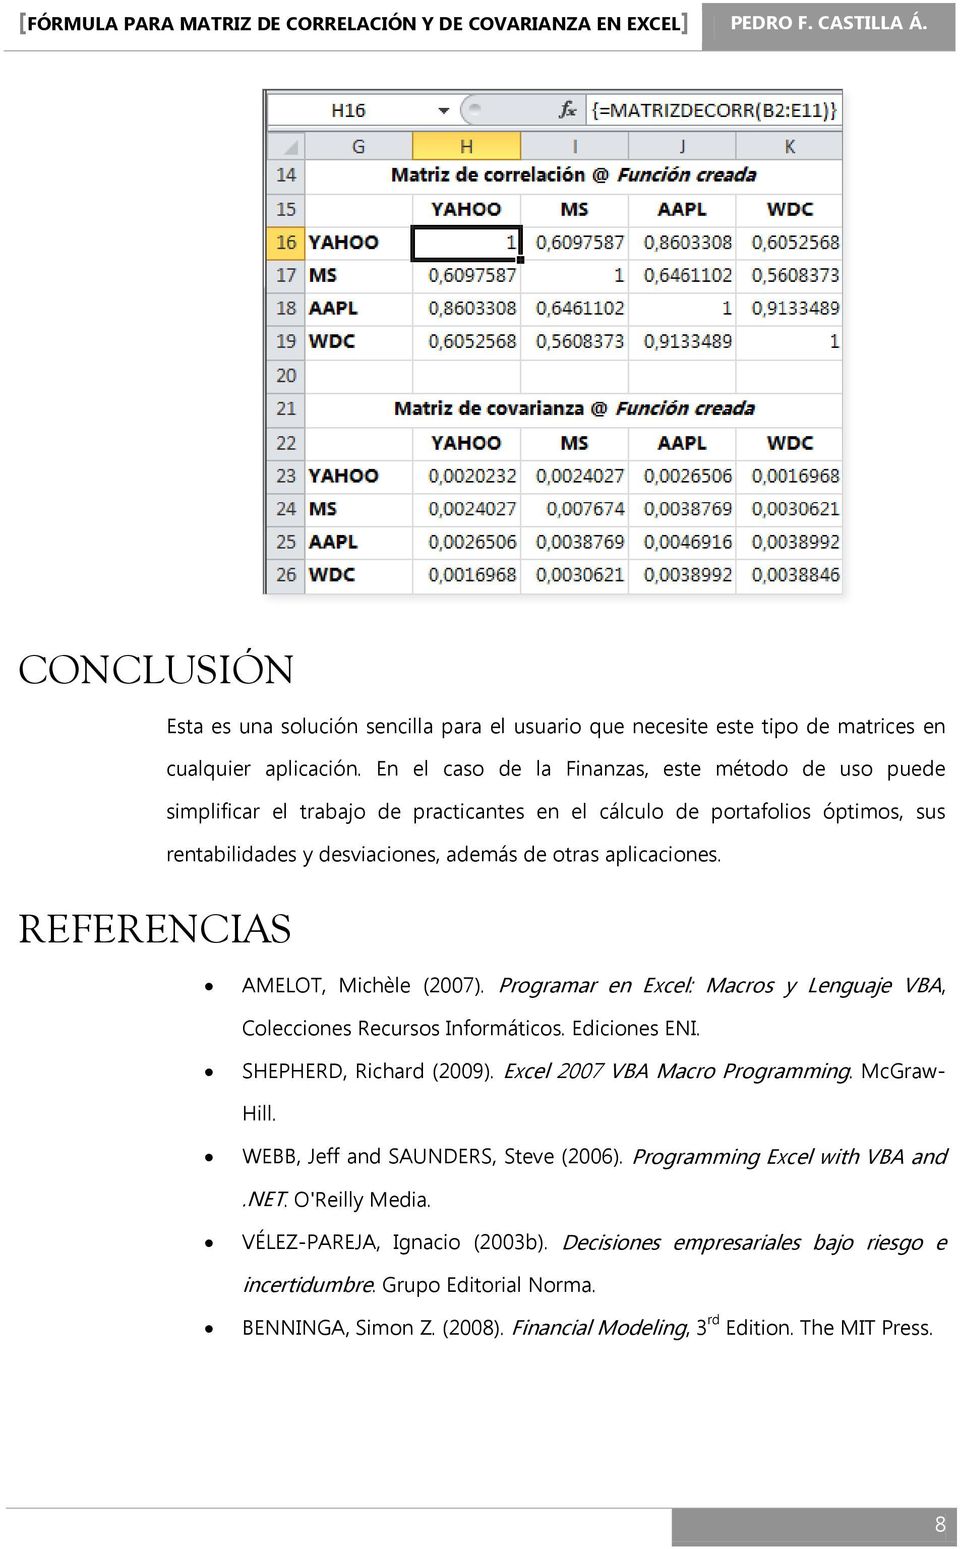 AMELOT, Michèle (2007). Programar en Excel: Macros y Lenguaje VBA, Colecciones Recursos Informáticos. Ediciones ENI. SHEPHERD, Richard (2009). Excel 2007 VBA Macro Programming. McGraw- Hill.